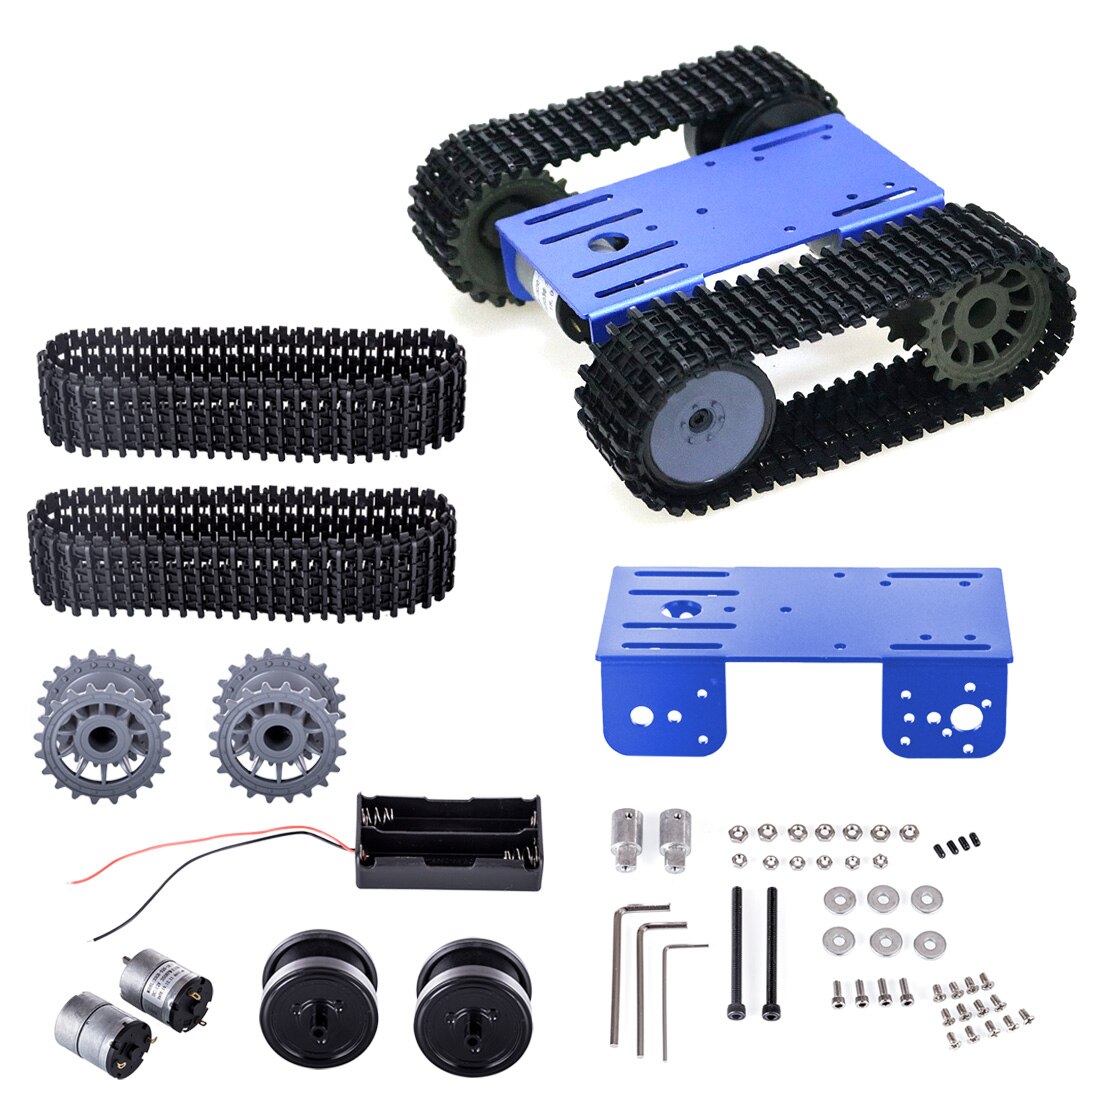 Tp101- sporet robot smart bil platform diy metal robot tank crawler chassis platform kit til arduino - sort / blå / hvid: 2